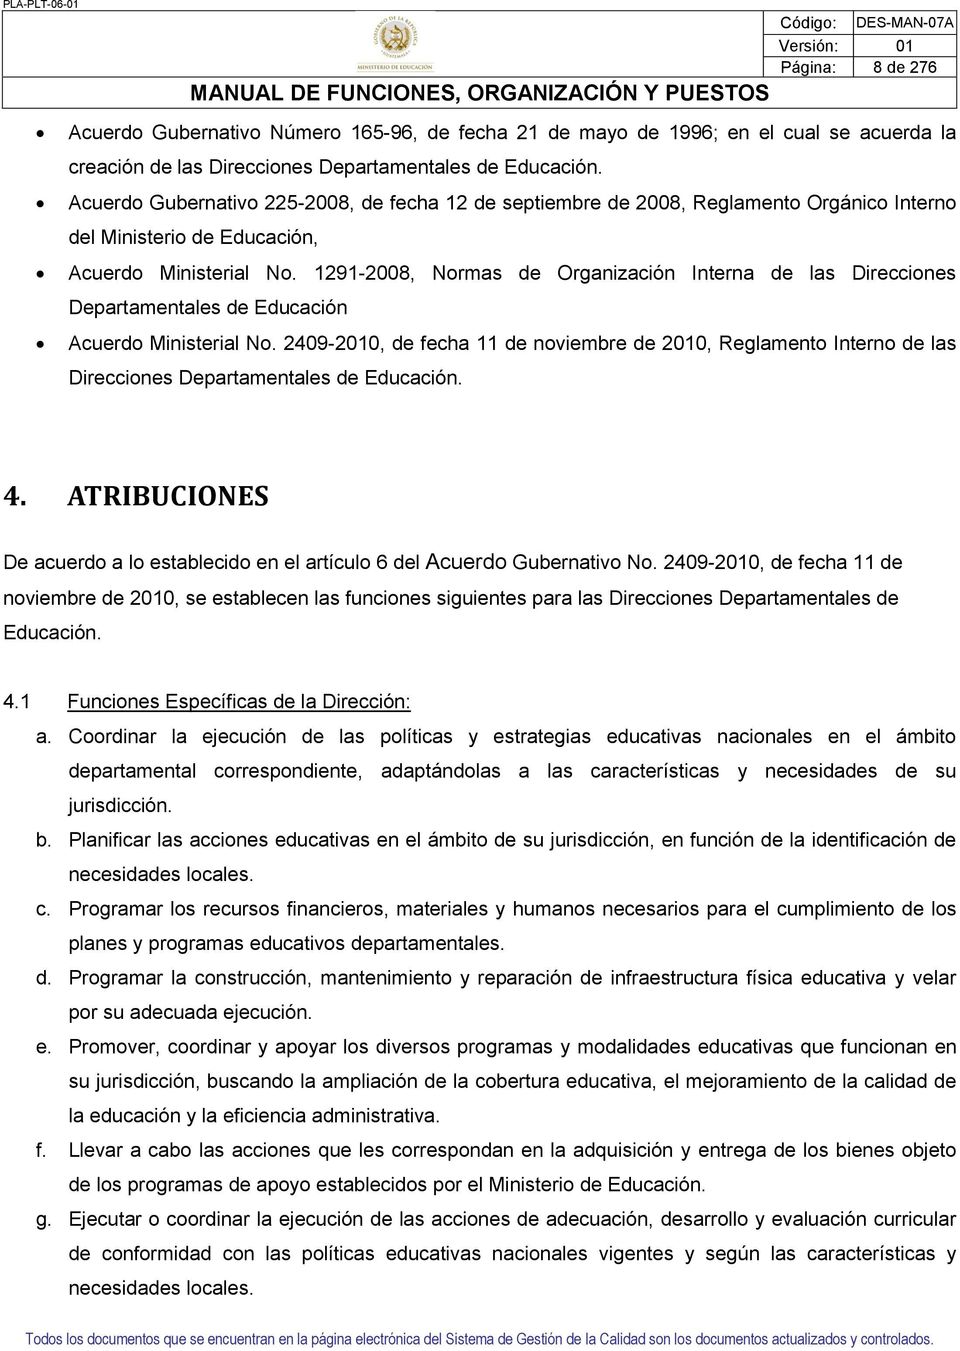 191-008, Normas de Organización Interna de las Direcciones Departamentales de Educación Acuerdo Ministerial No.